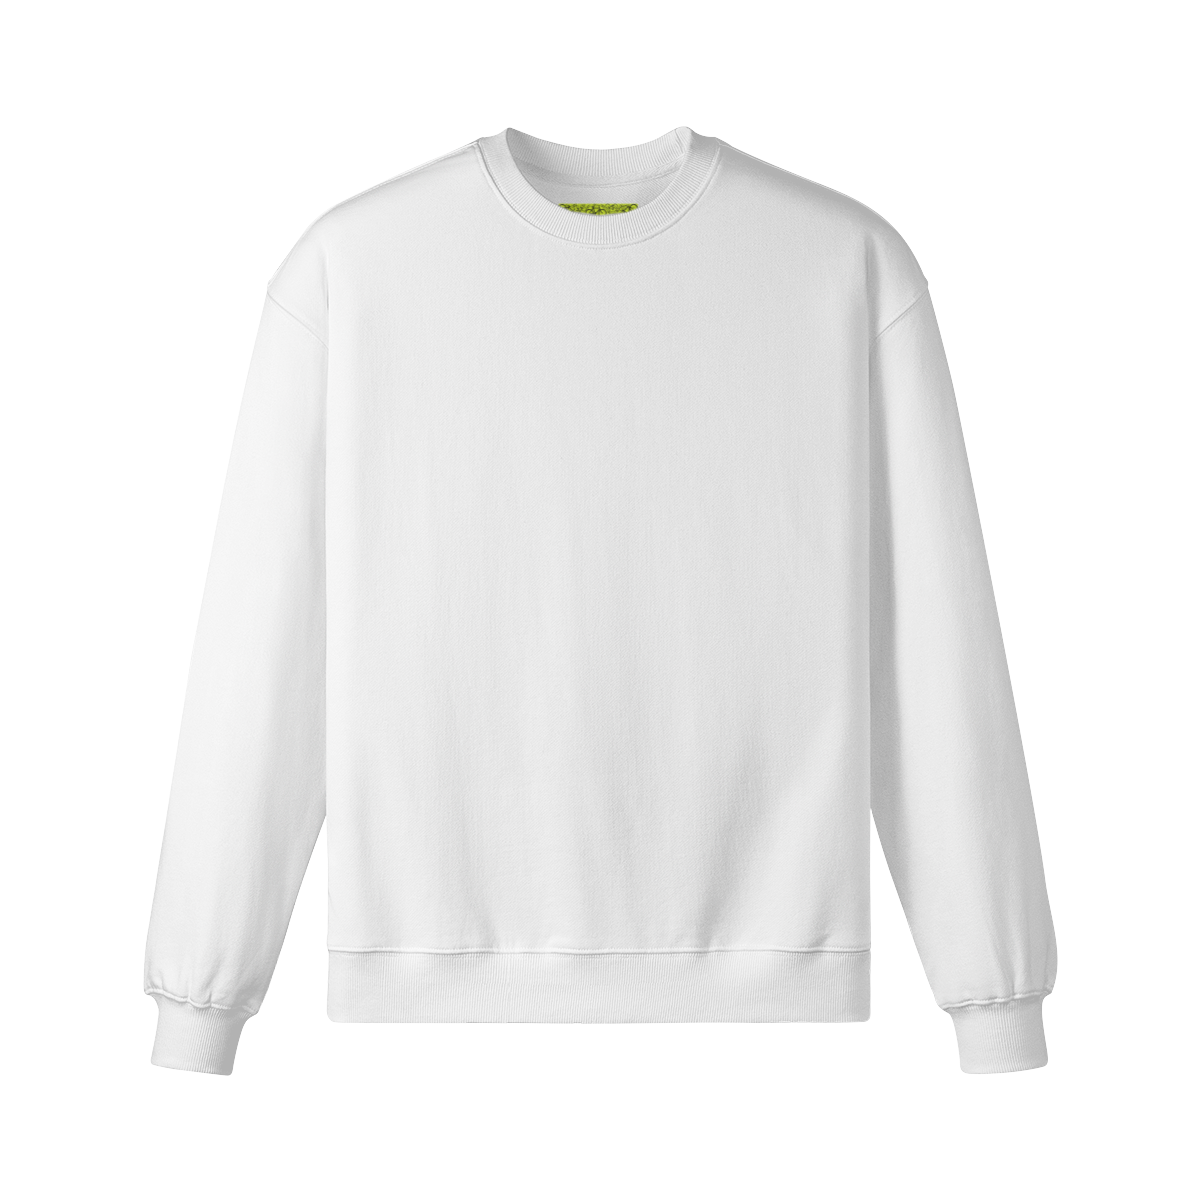 ACID (BACK PRINT) - Unisex Oversized Sweatshirt - front - white